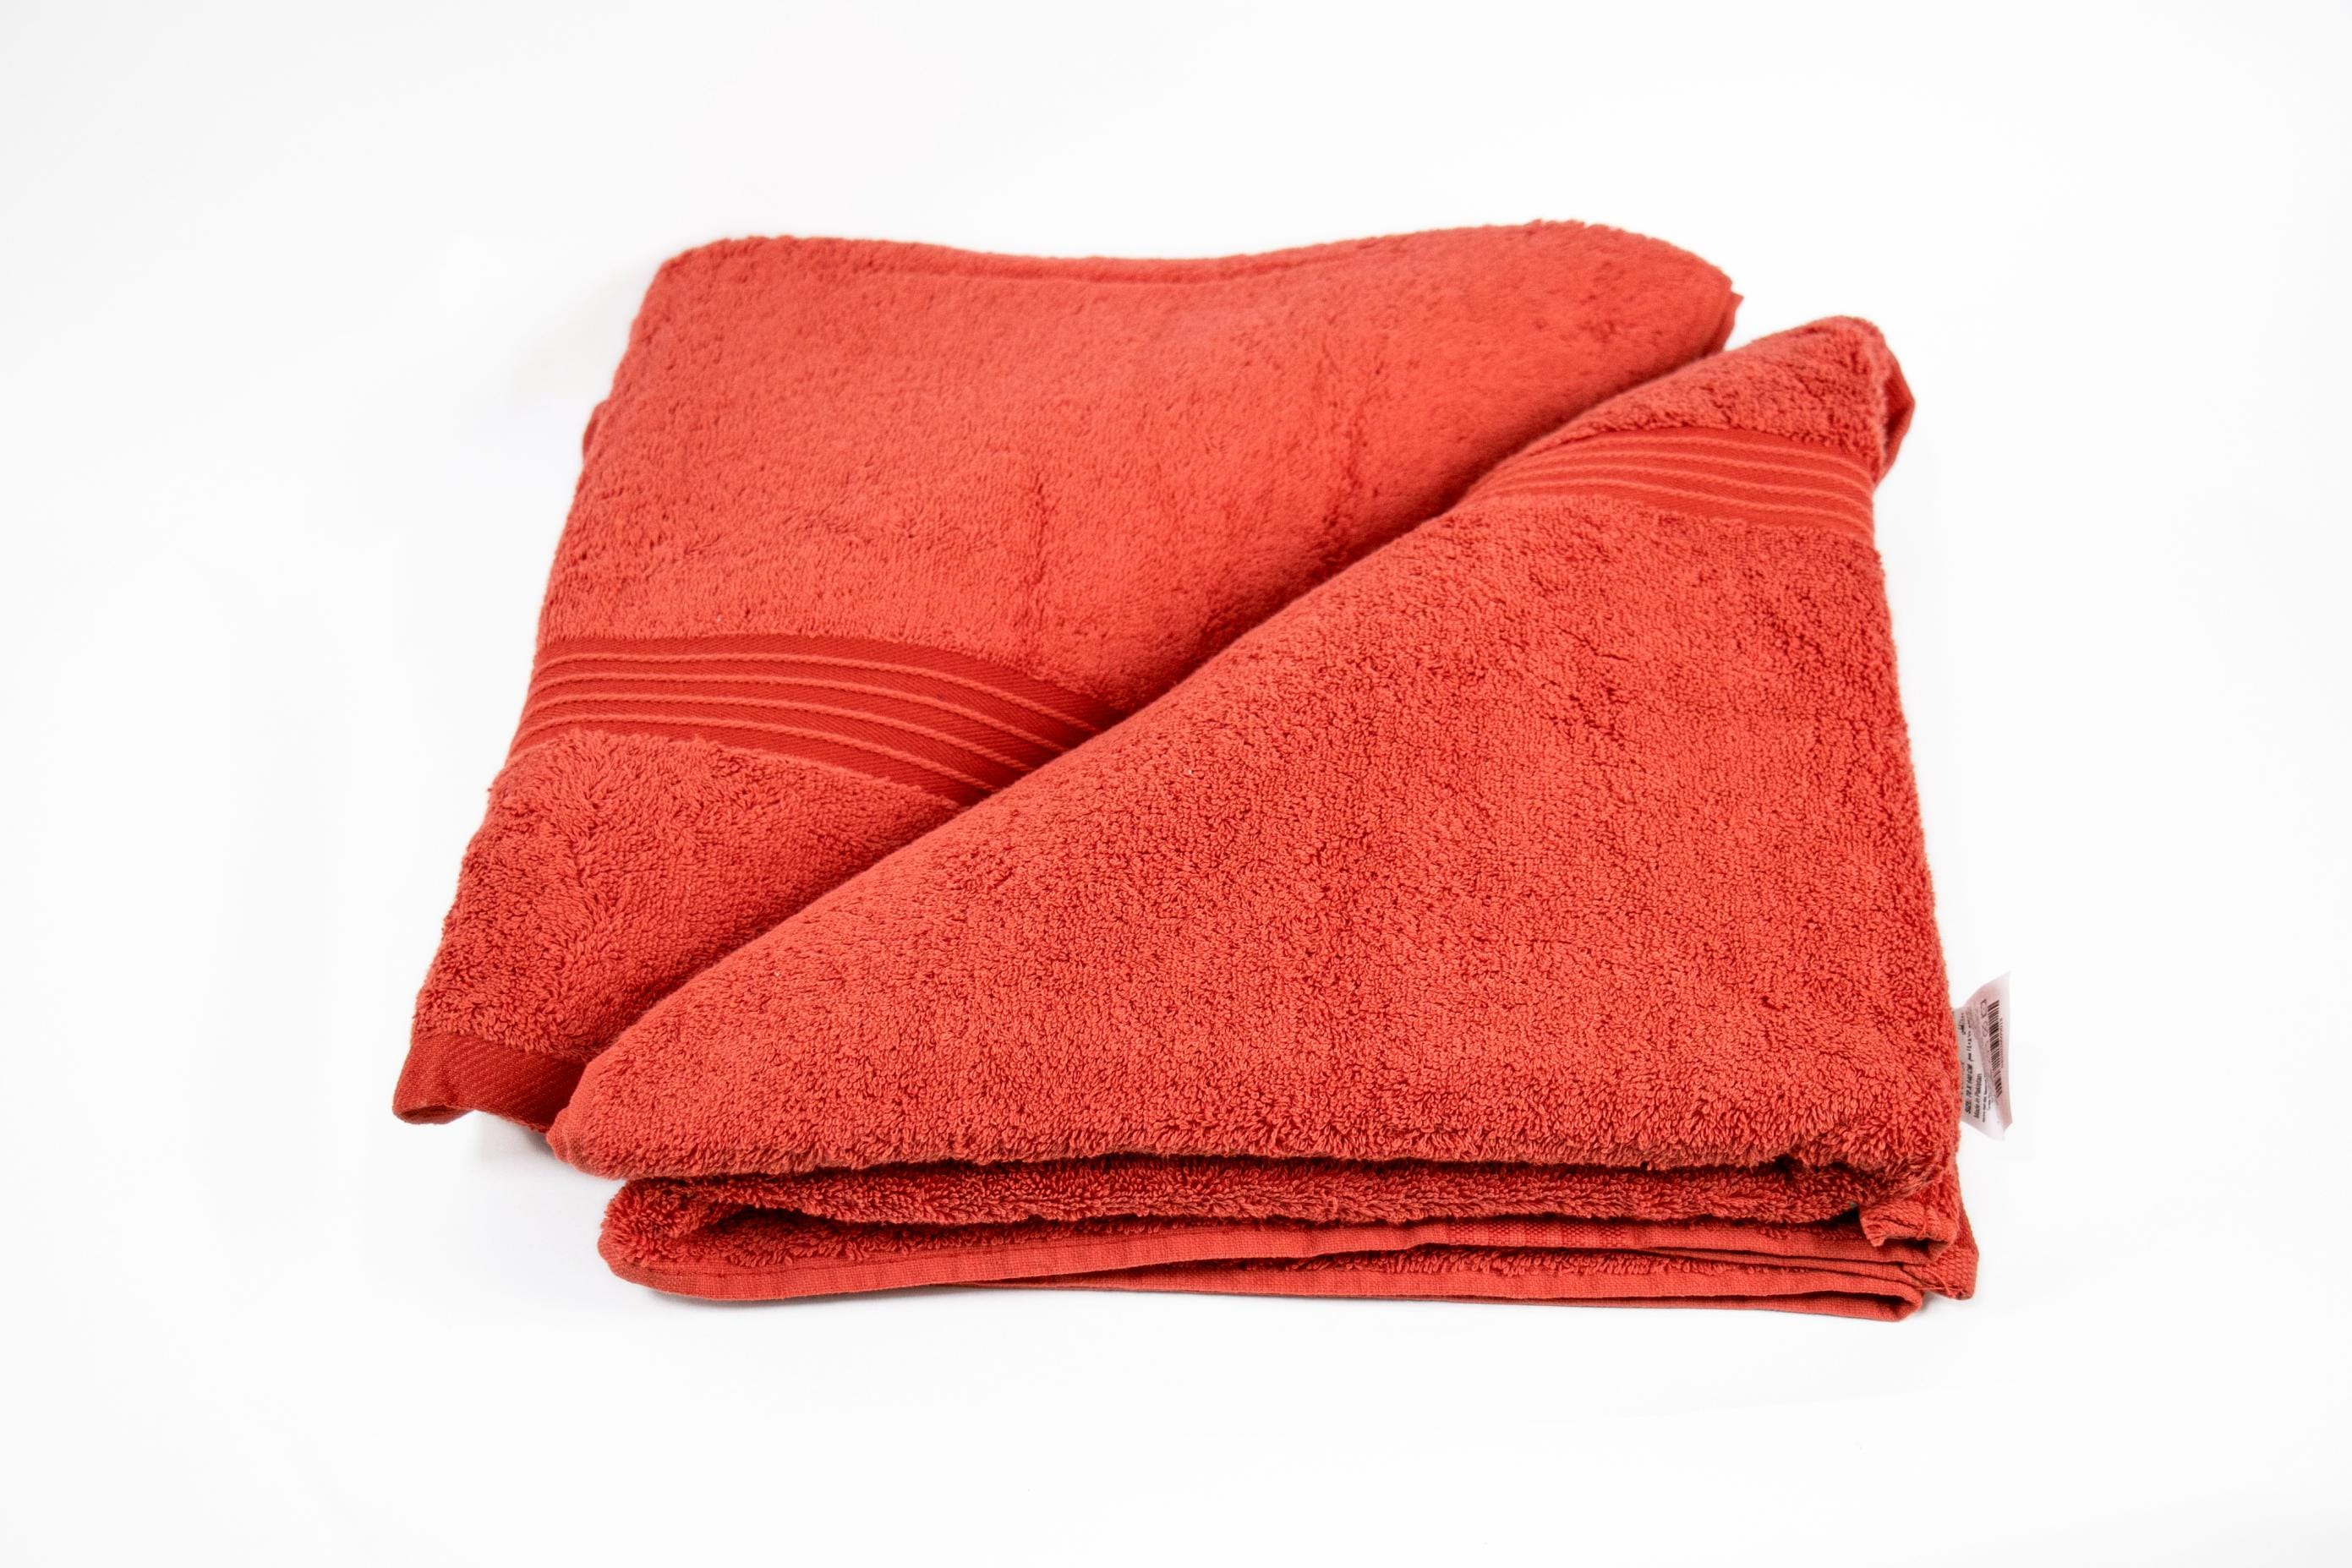 Cotton Home Bath Towel 2-piece Set Red